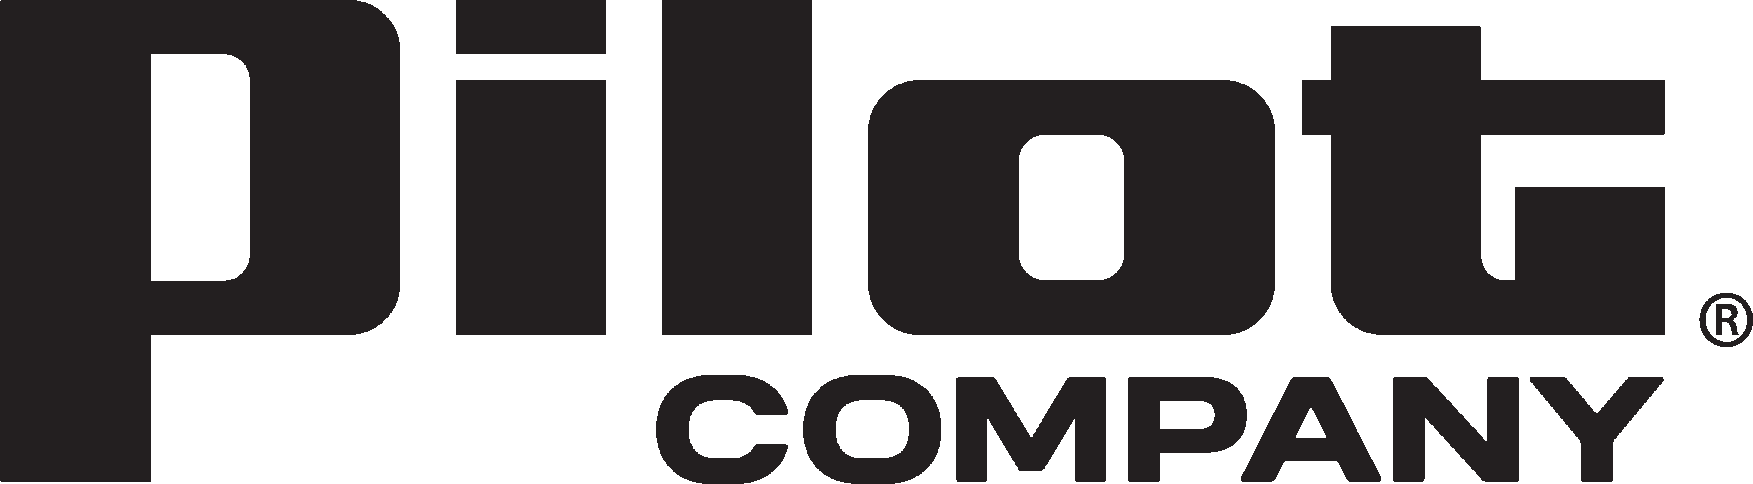 Logo for Pilot Company